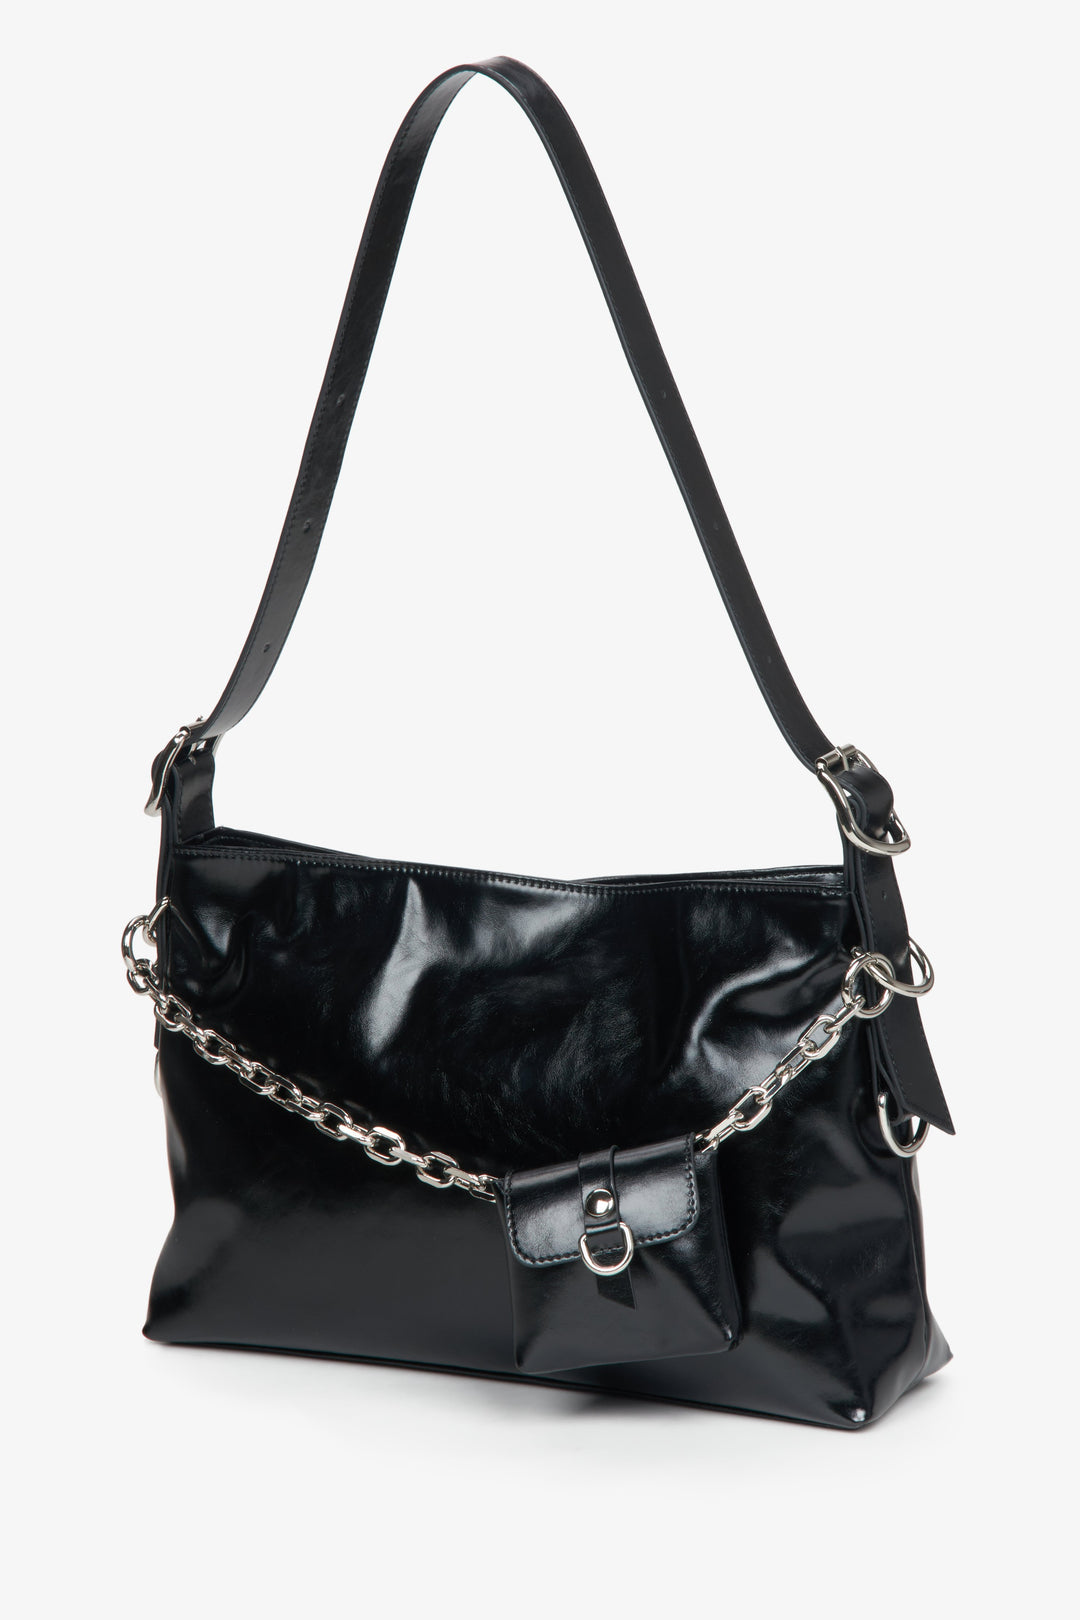 Women's black handbag Estro.